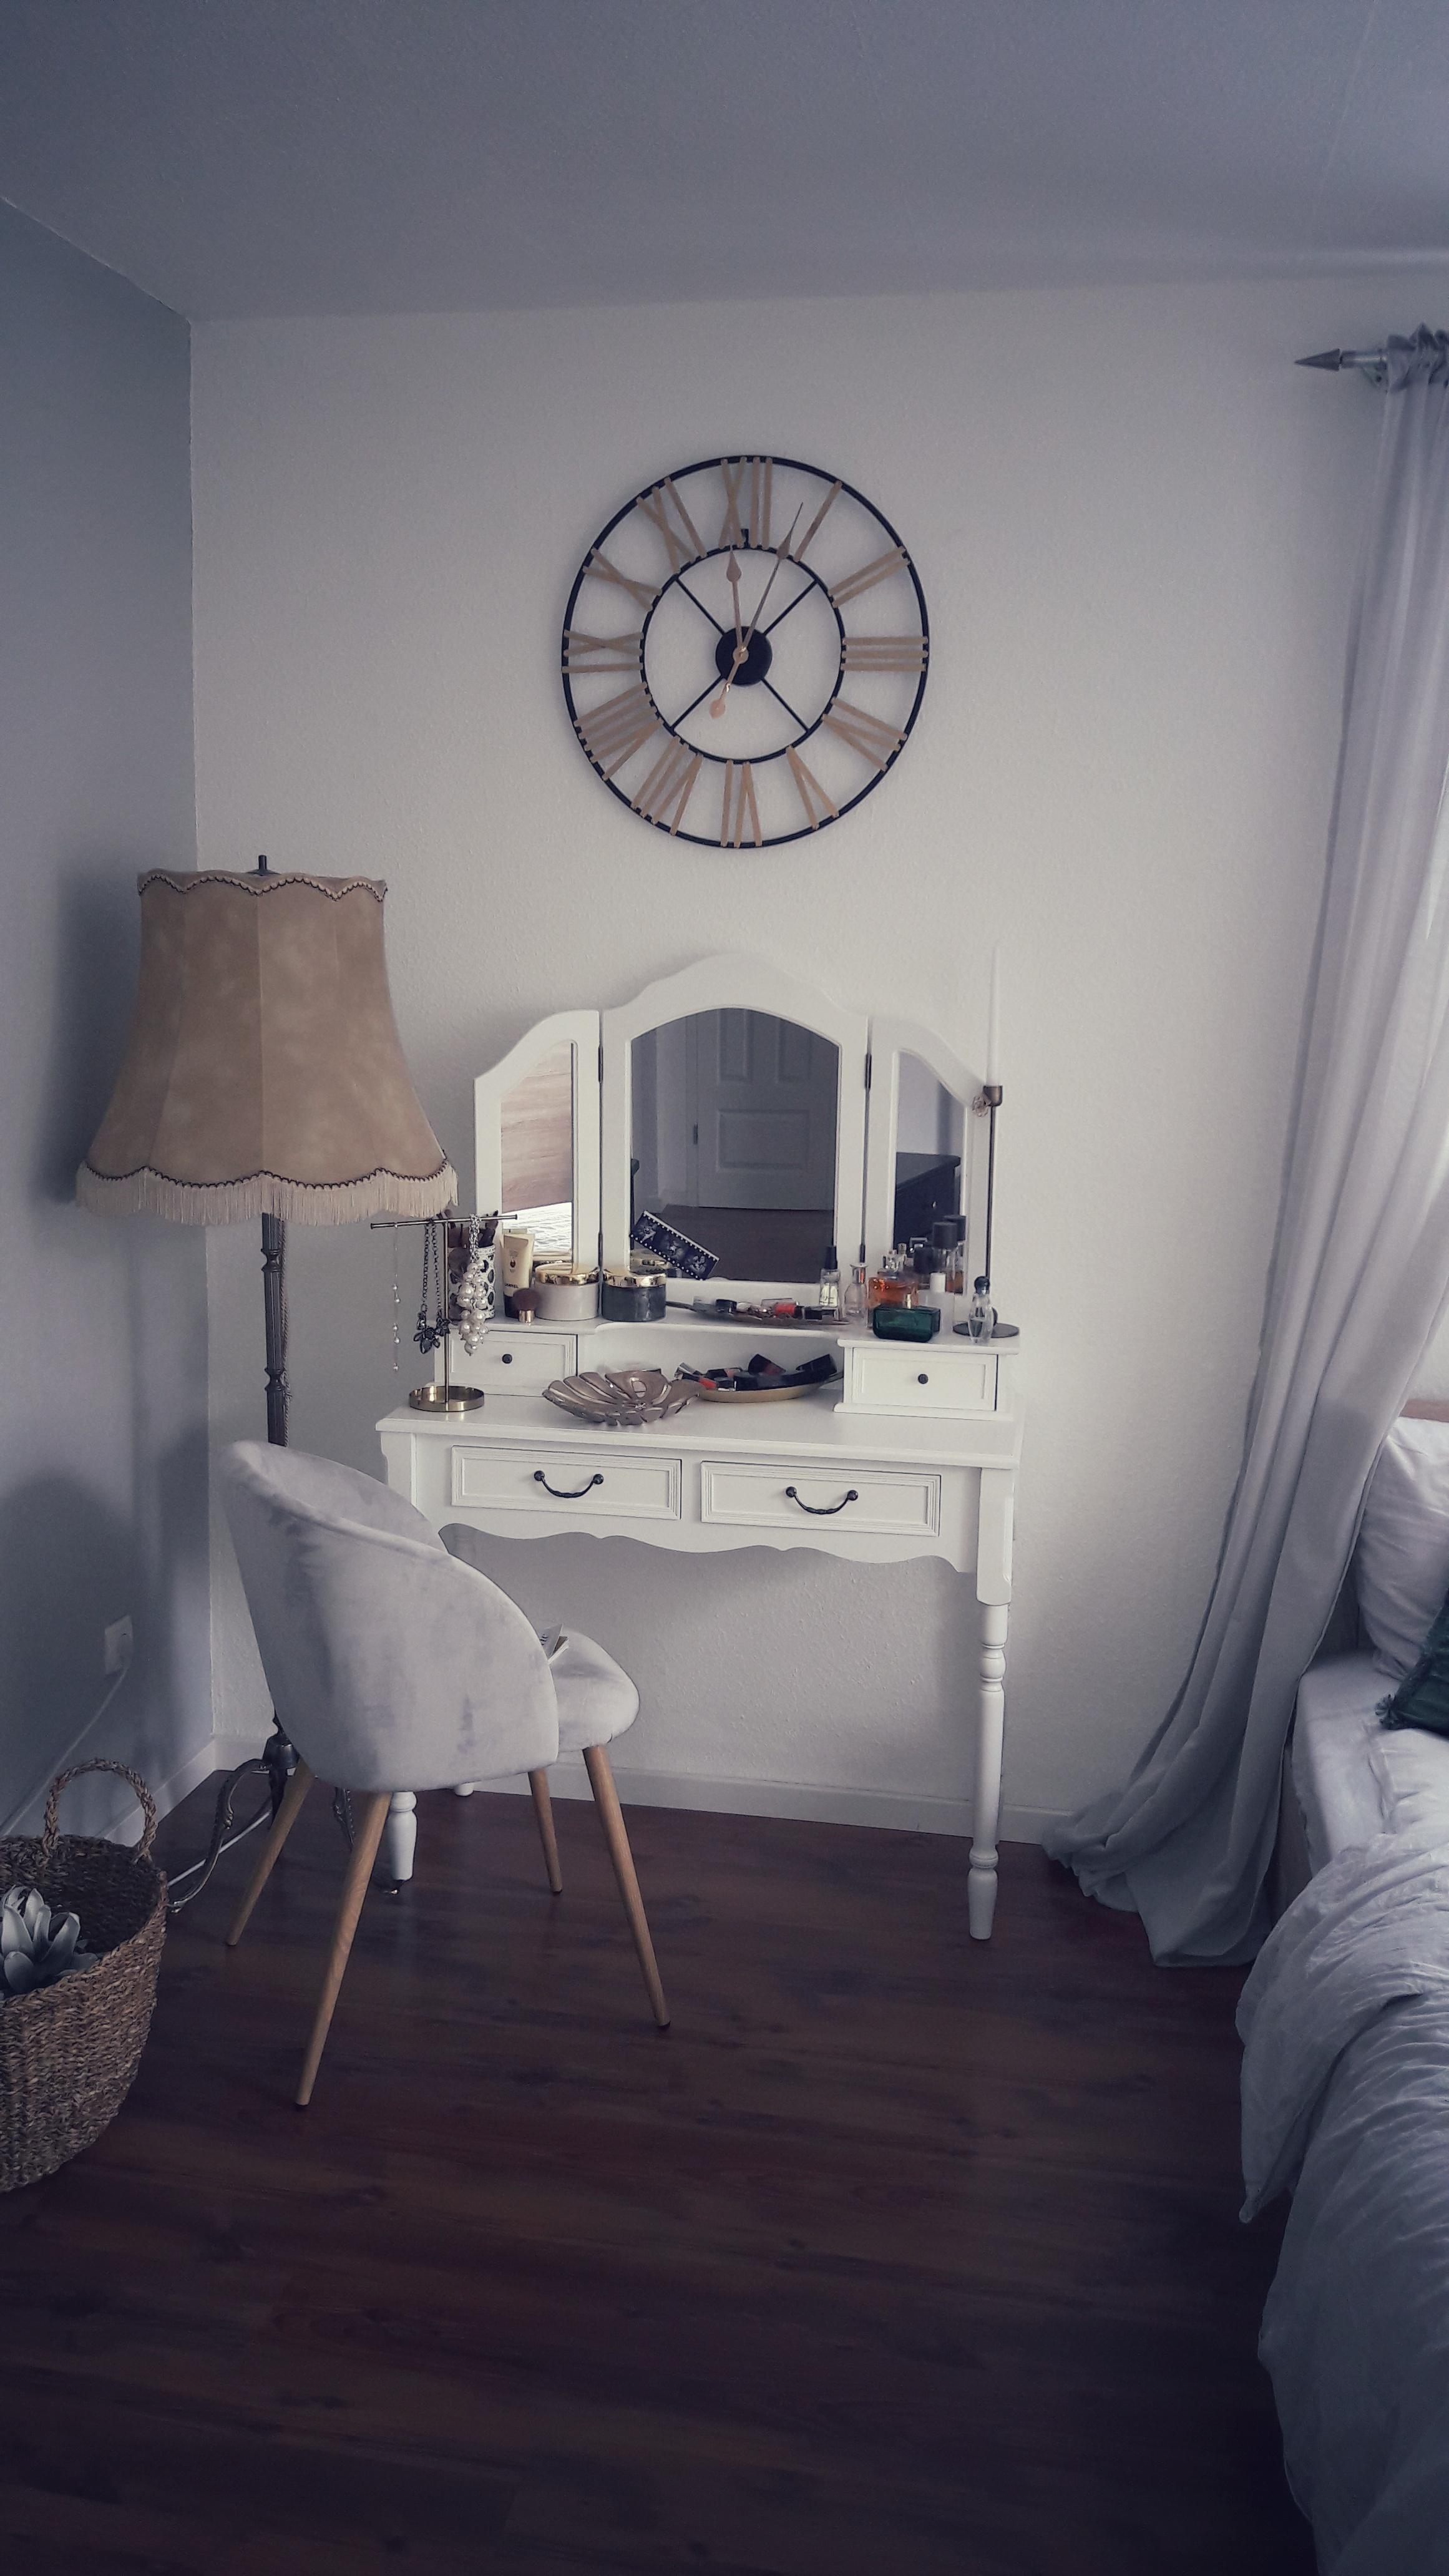 #Schlafzimmer #schminktisch #grey #gold #Black #Clock #mirror